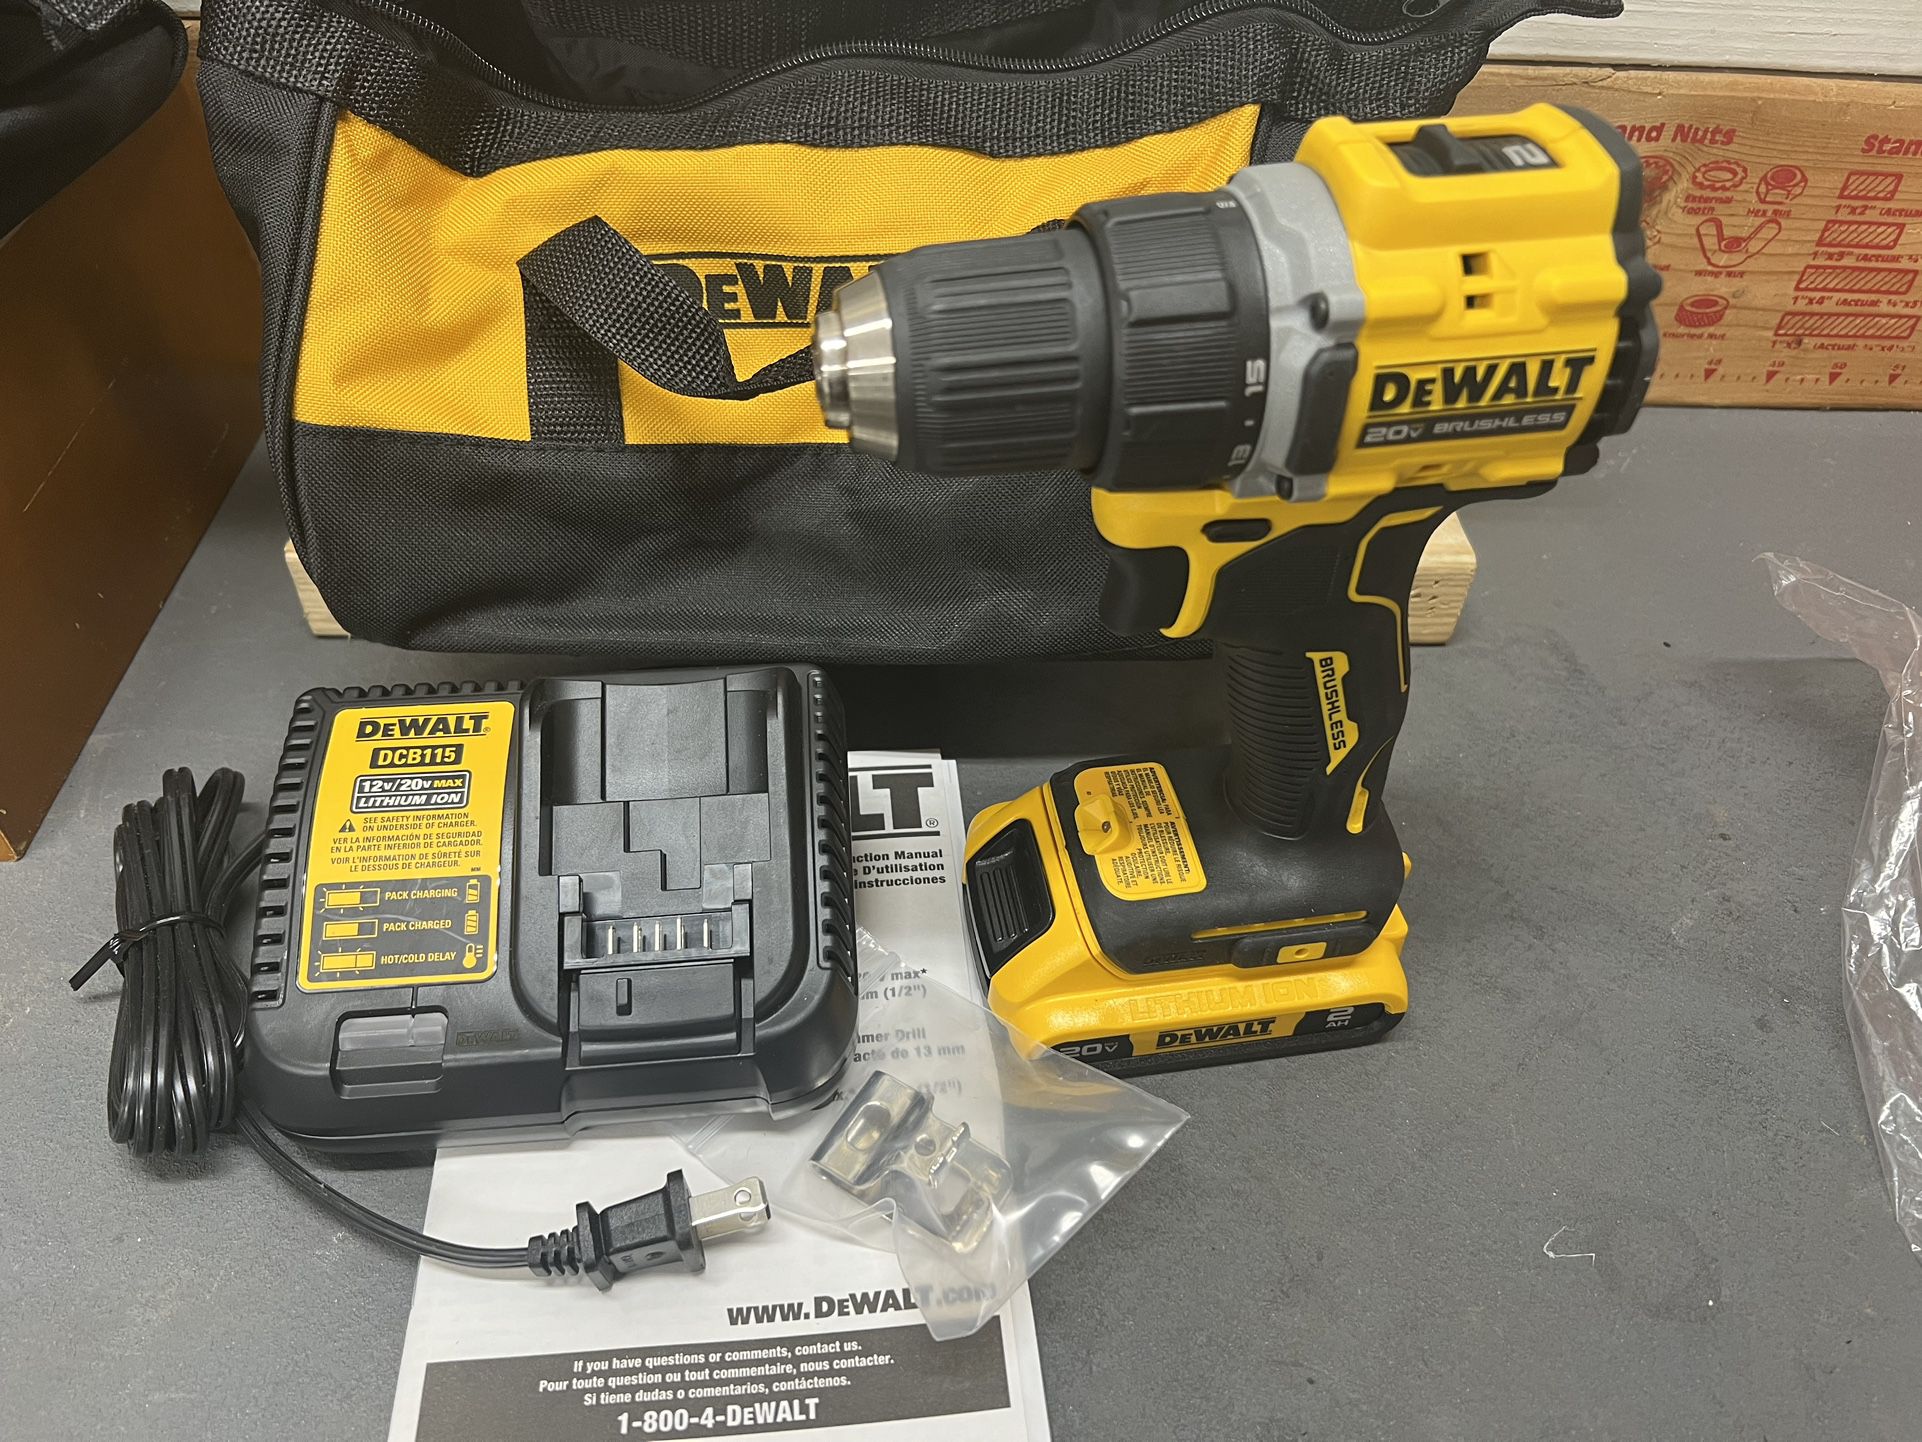 Dewalt 20V Max Atomic Brushless Drill Driver Kit w/Bag. New